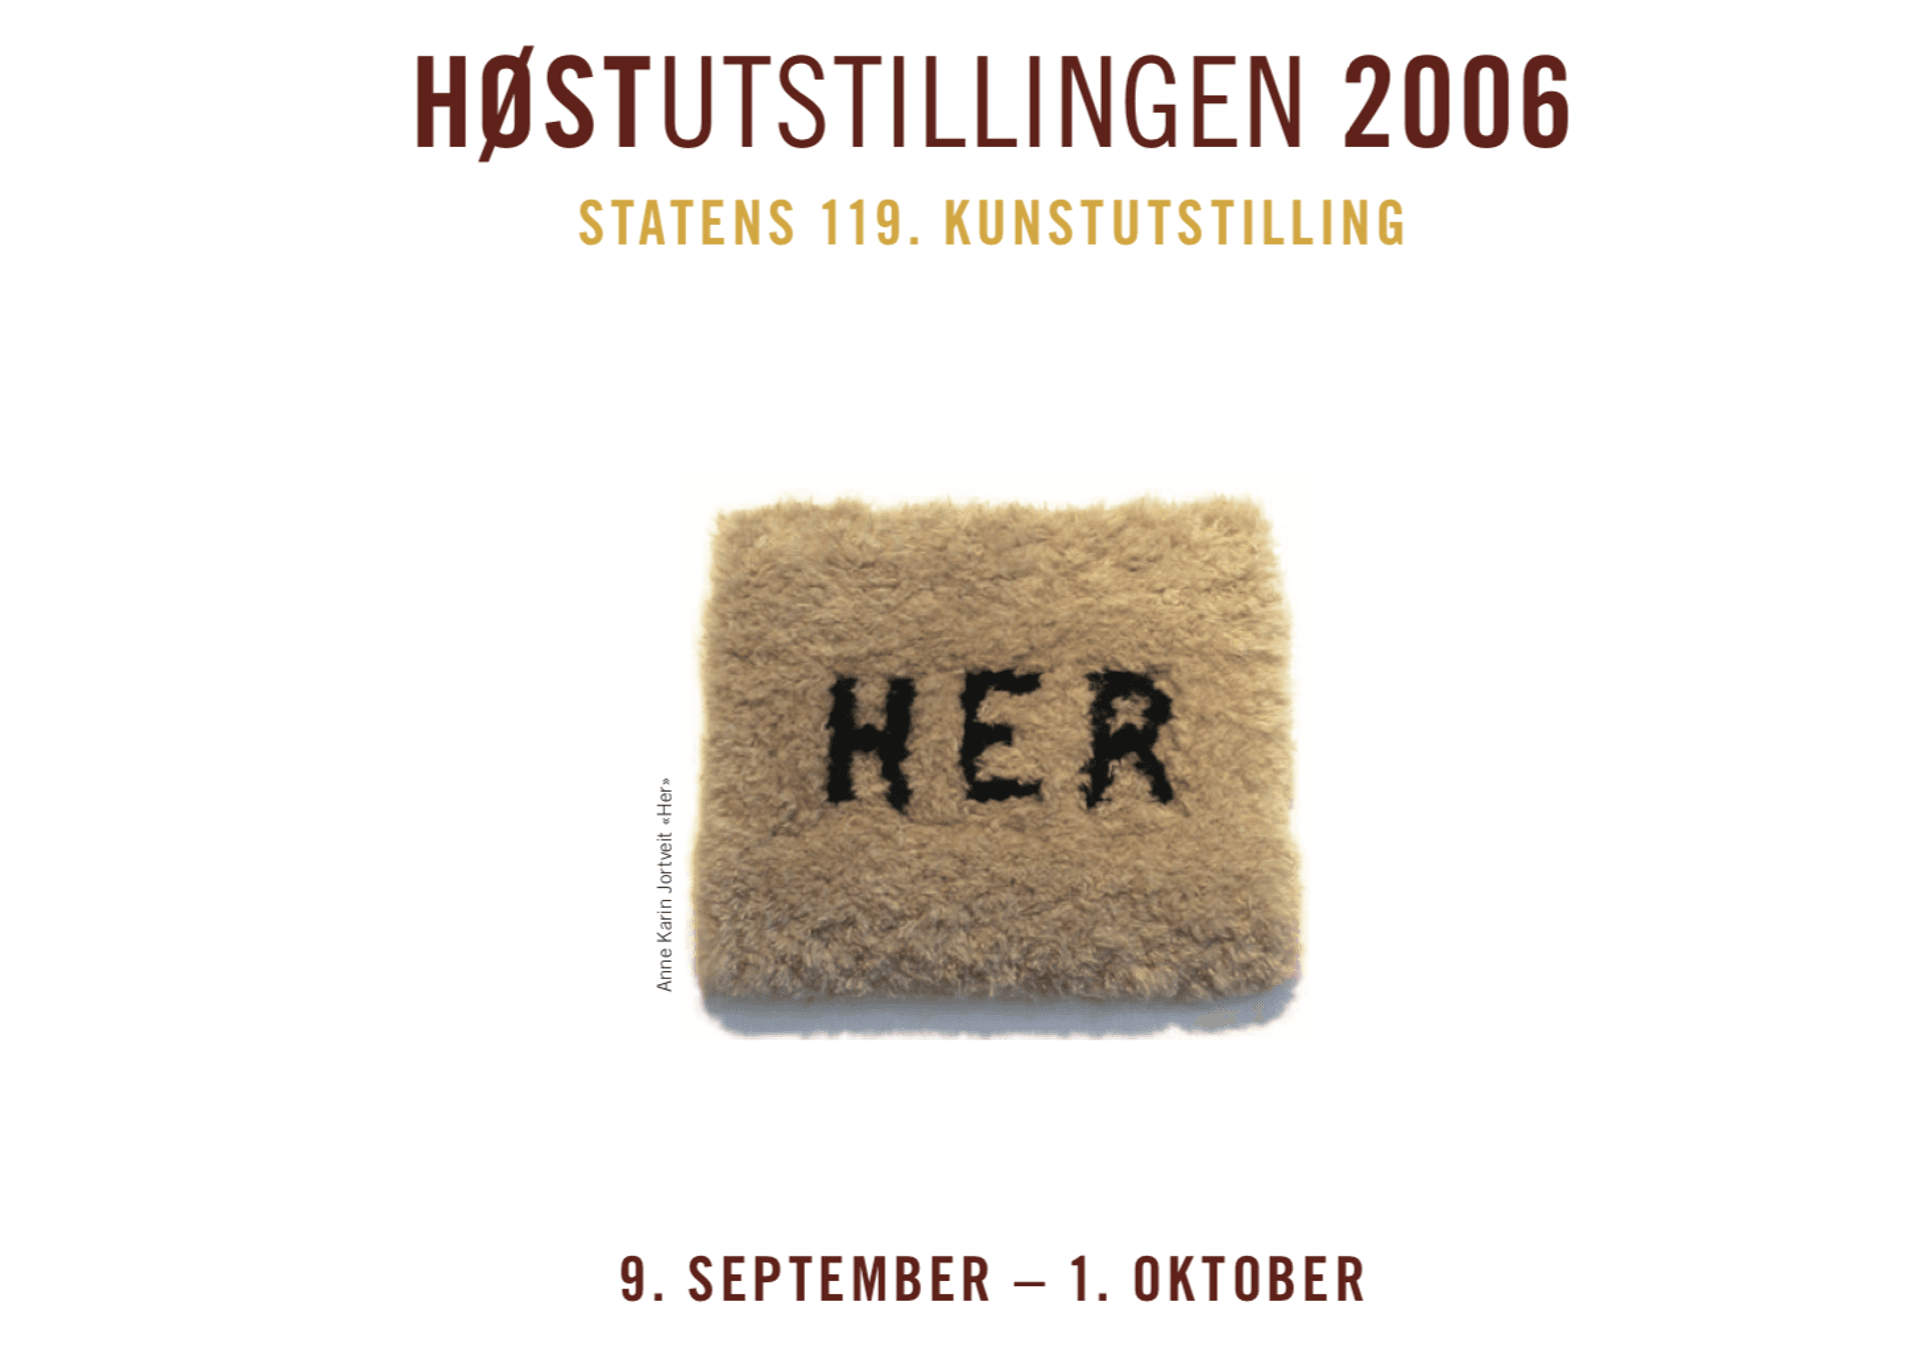 Hostutstilling 2006